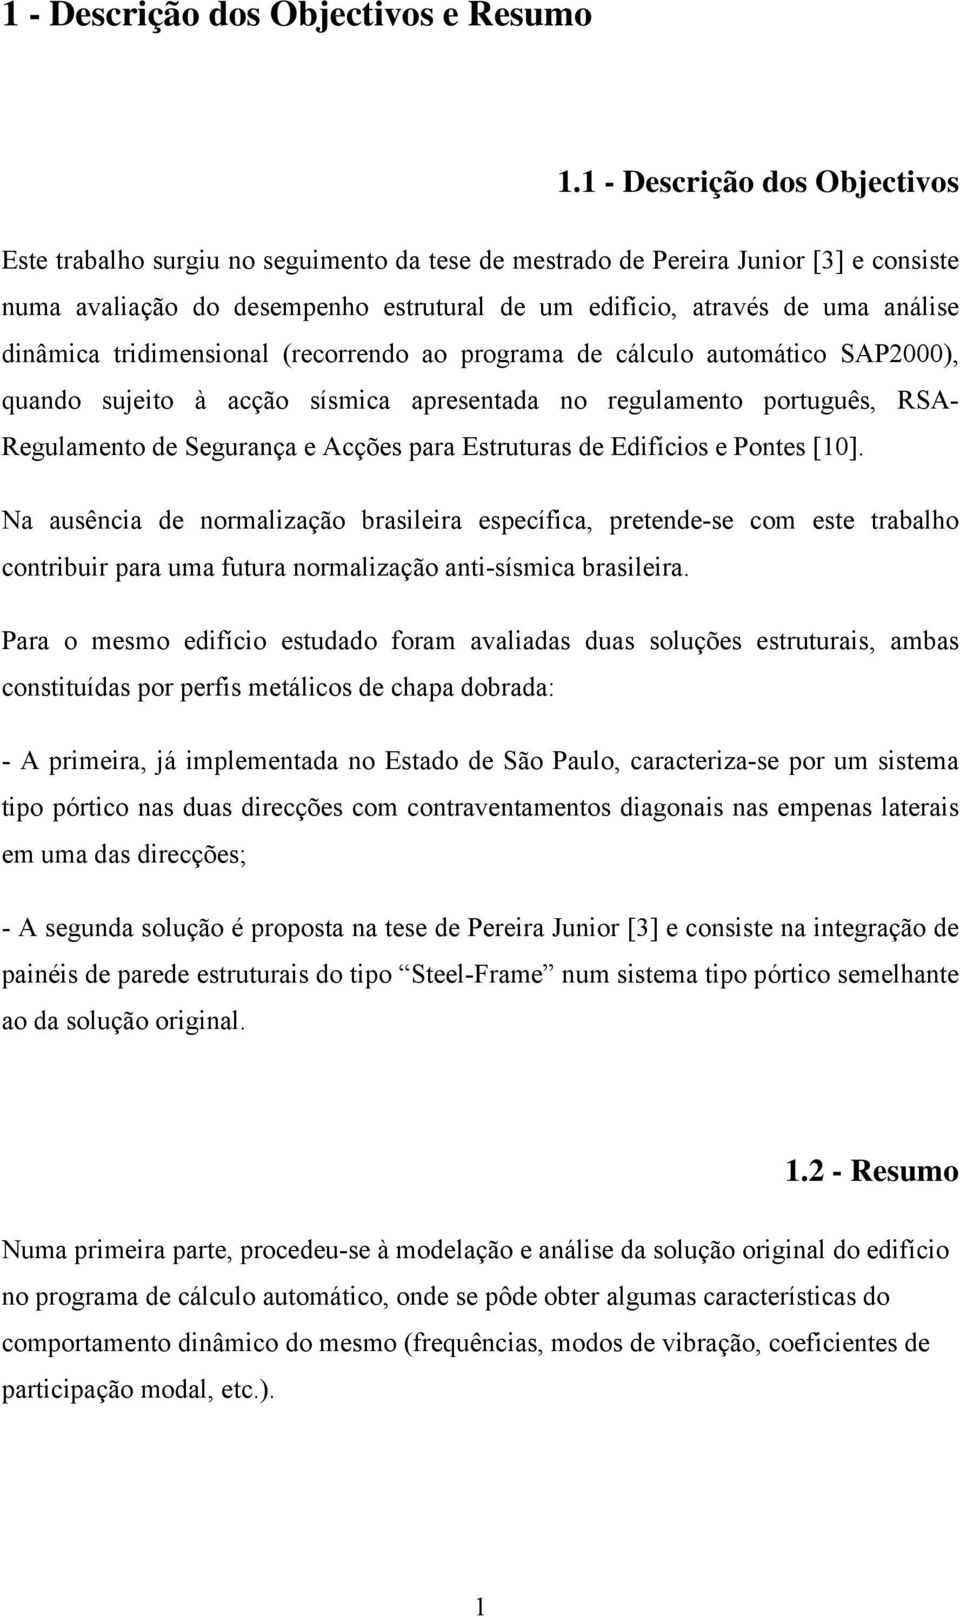 dinâmica tridimensional (recorrendo ao programa de cálculo automático SAP2000), quando sujeito à acção sísmica apresentada no regulamento português, RSA- Regulamento de Segurança e Acções para